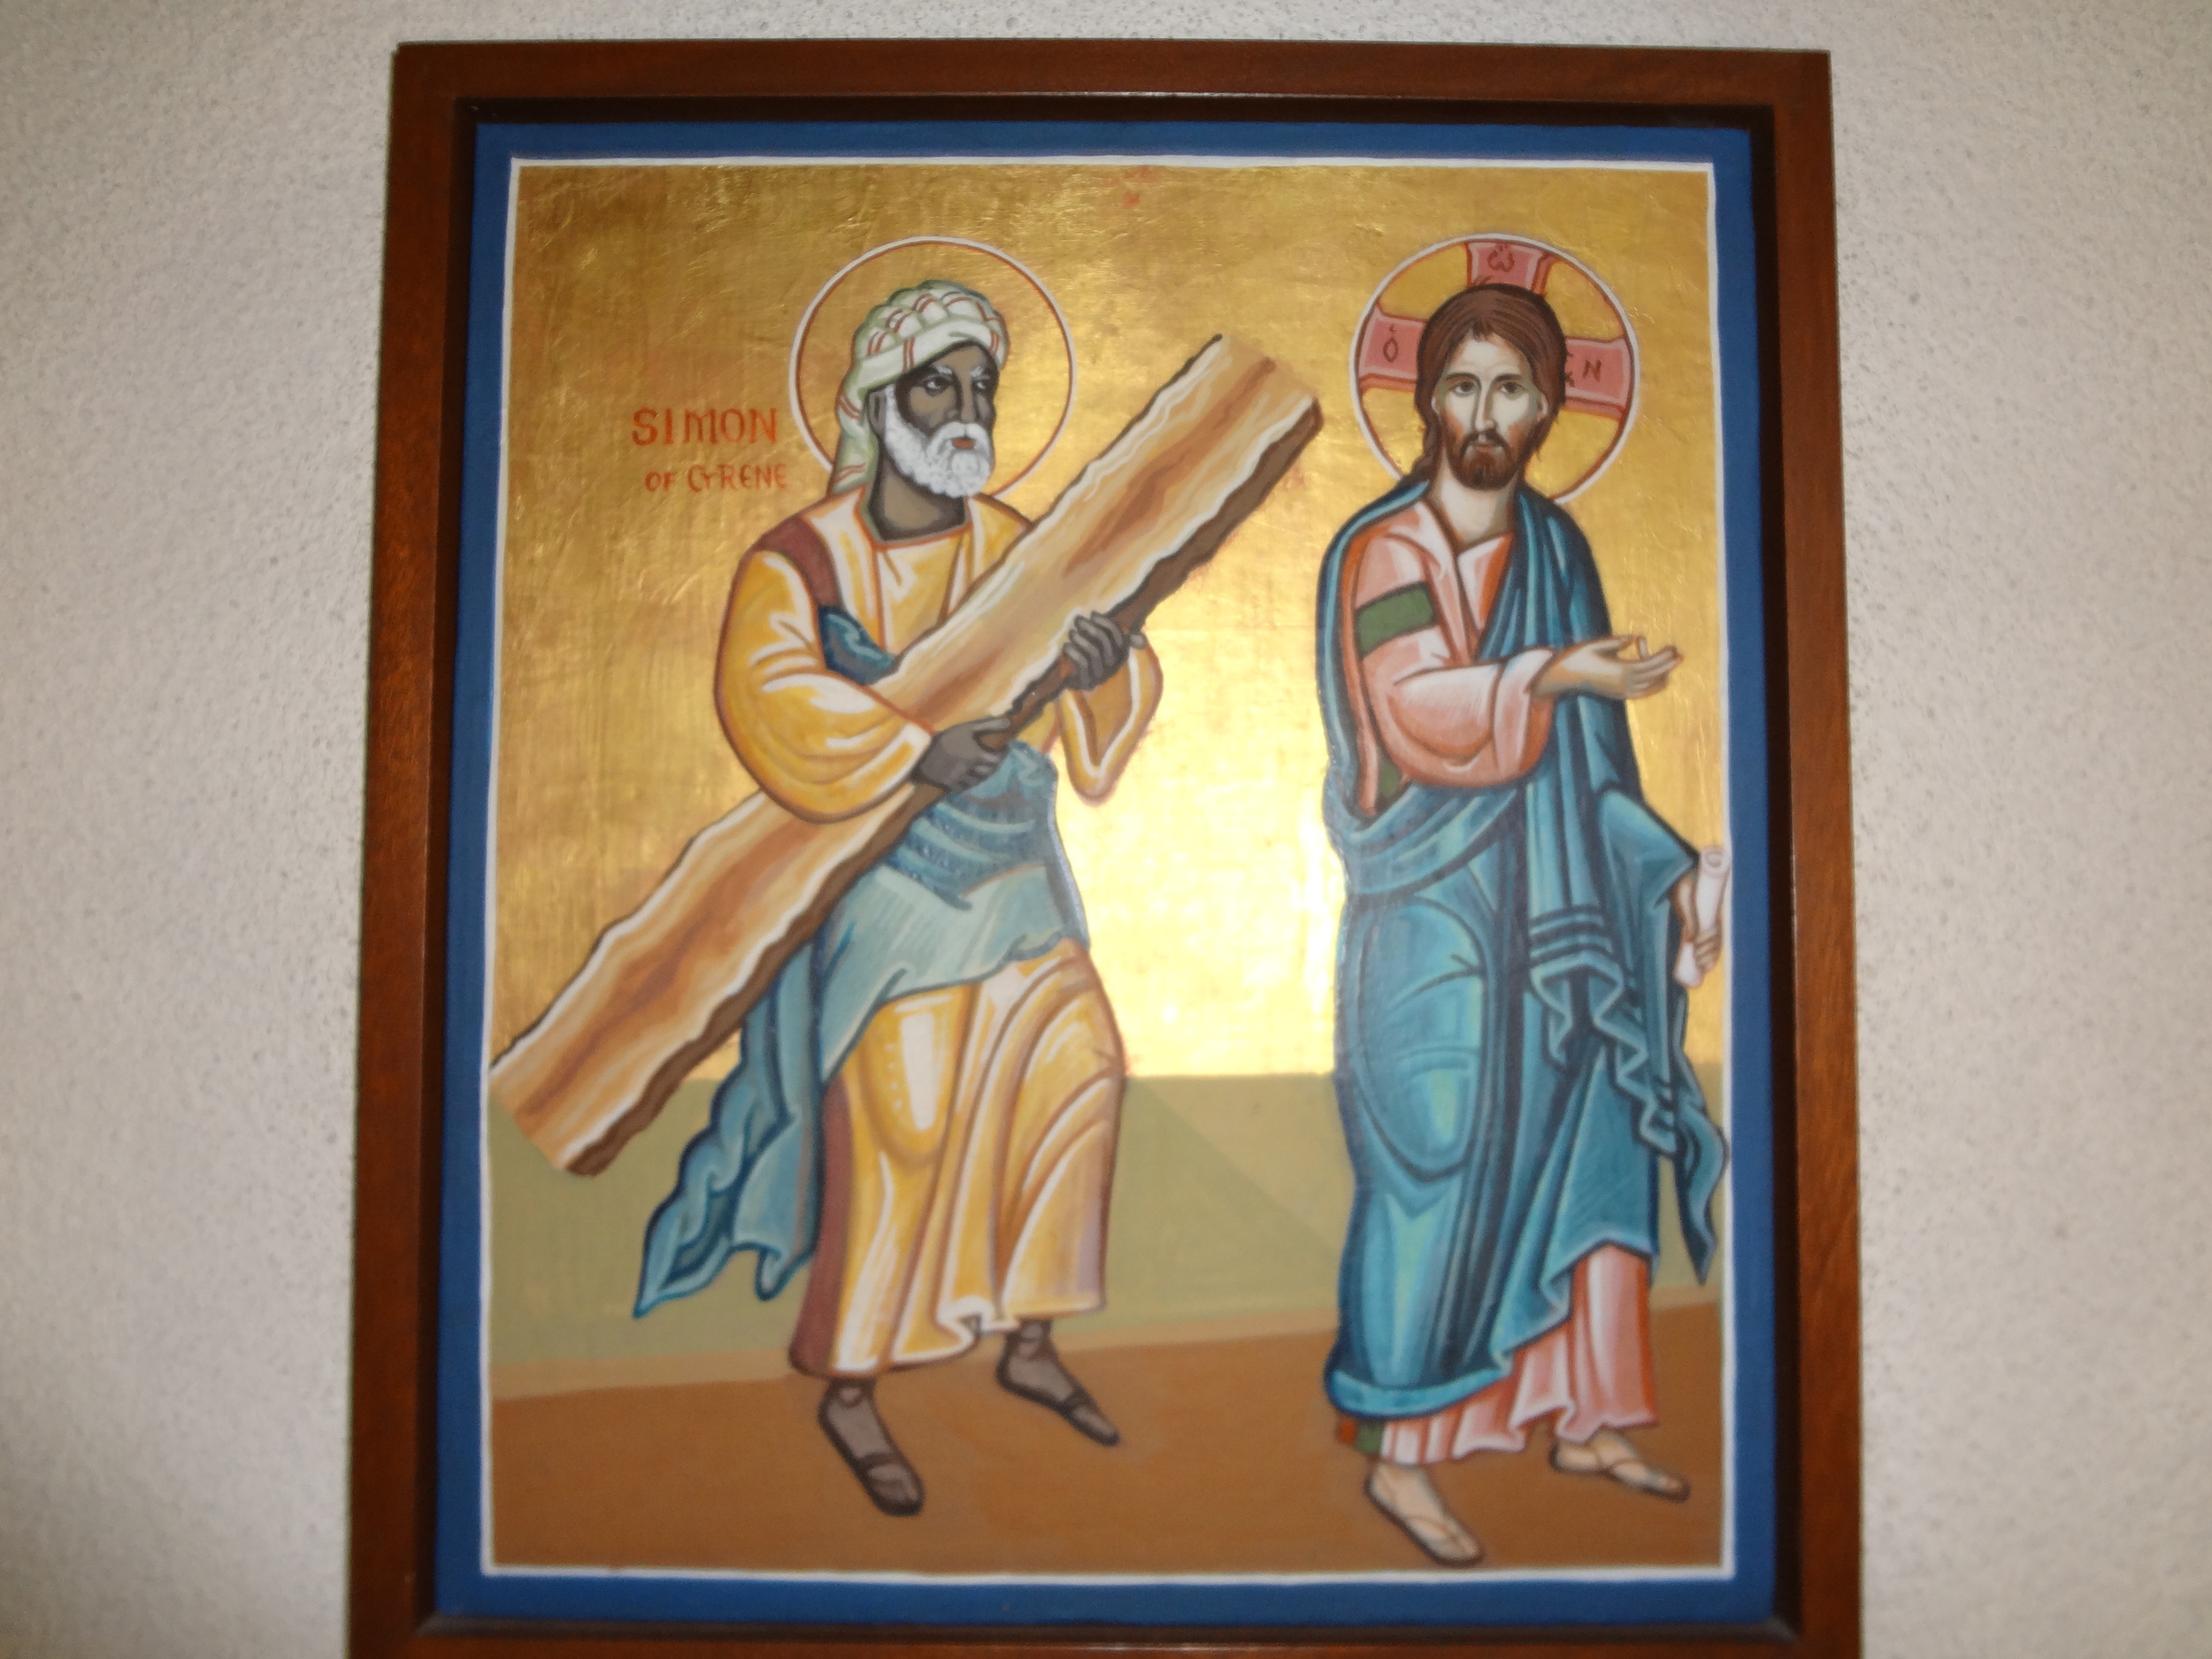 Station 5 - Simon of Cyrene takes the Cross